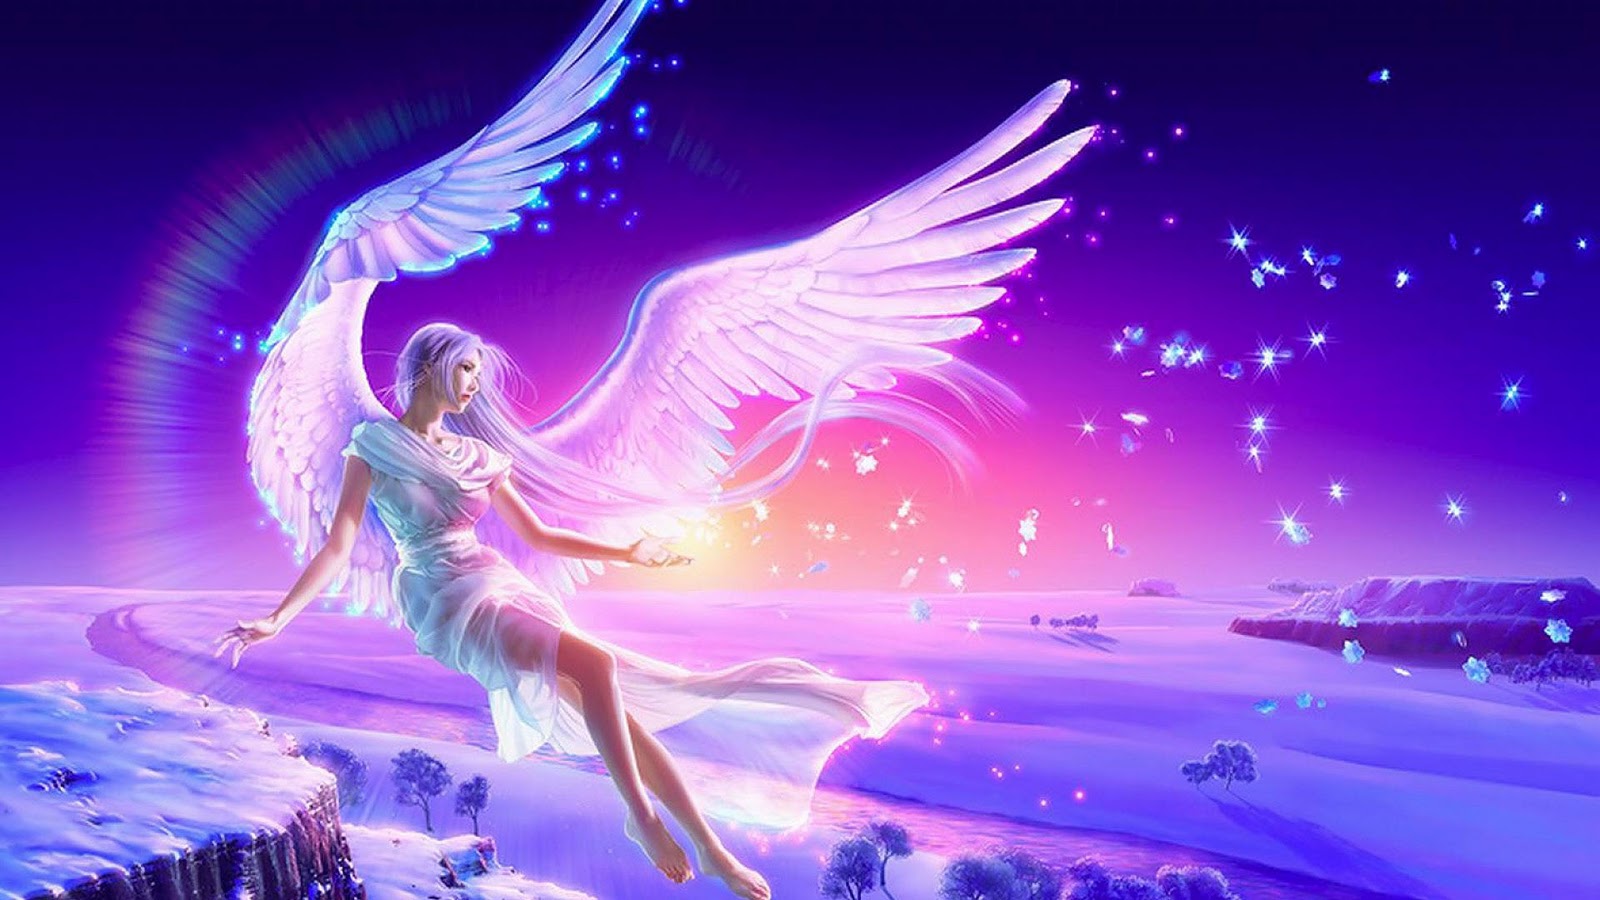 天使の壁紙,天使,架空の人物,cgアートワーク,超自然的な生き物,紫の